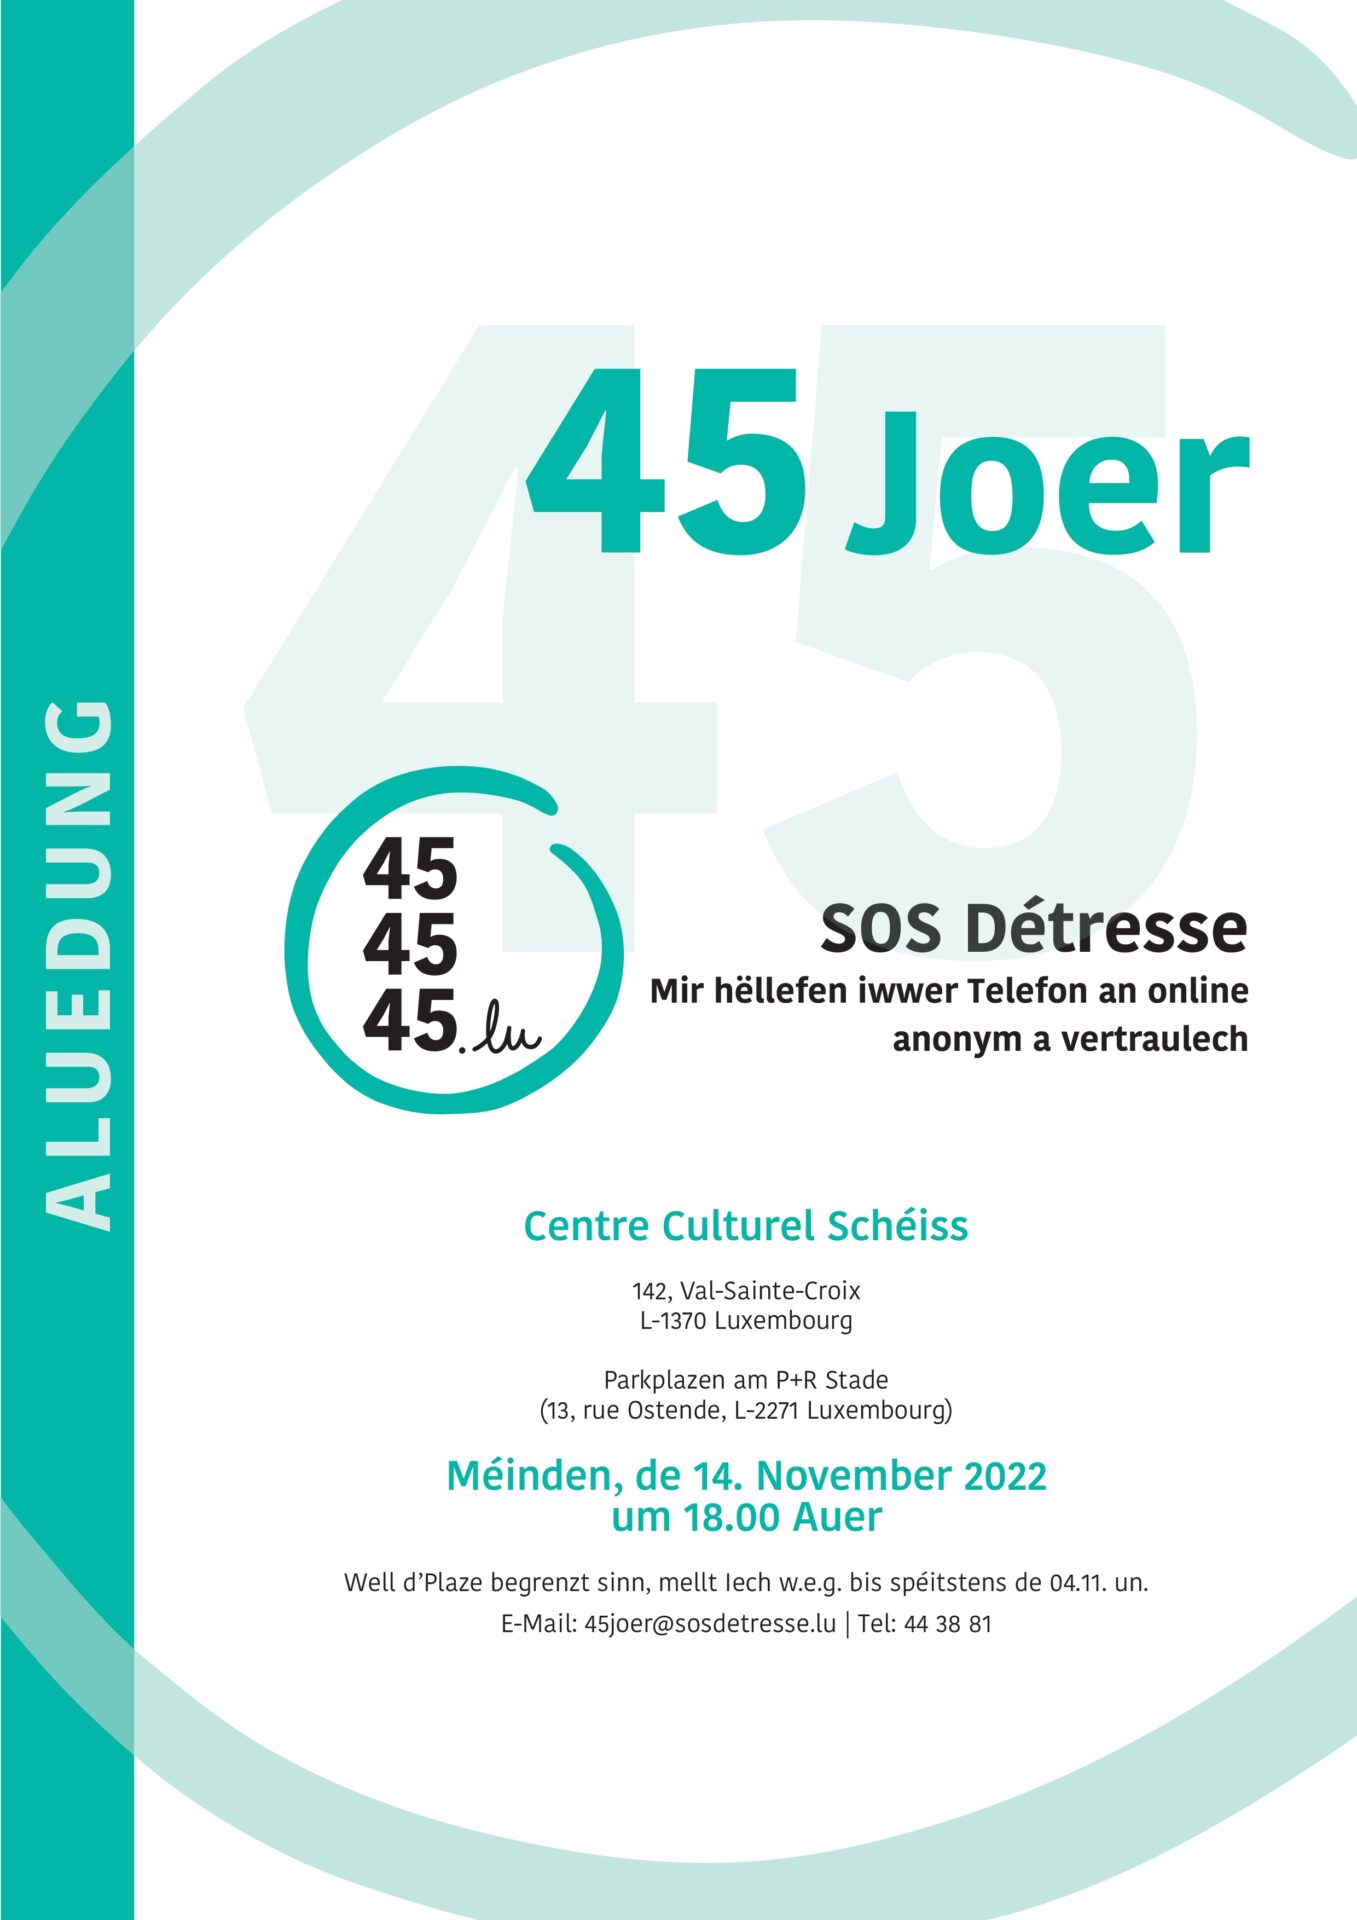 45 Joer SOS Détresse - akademesch Sëtzung